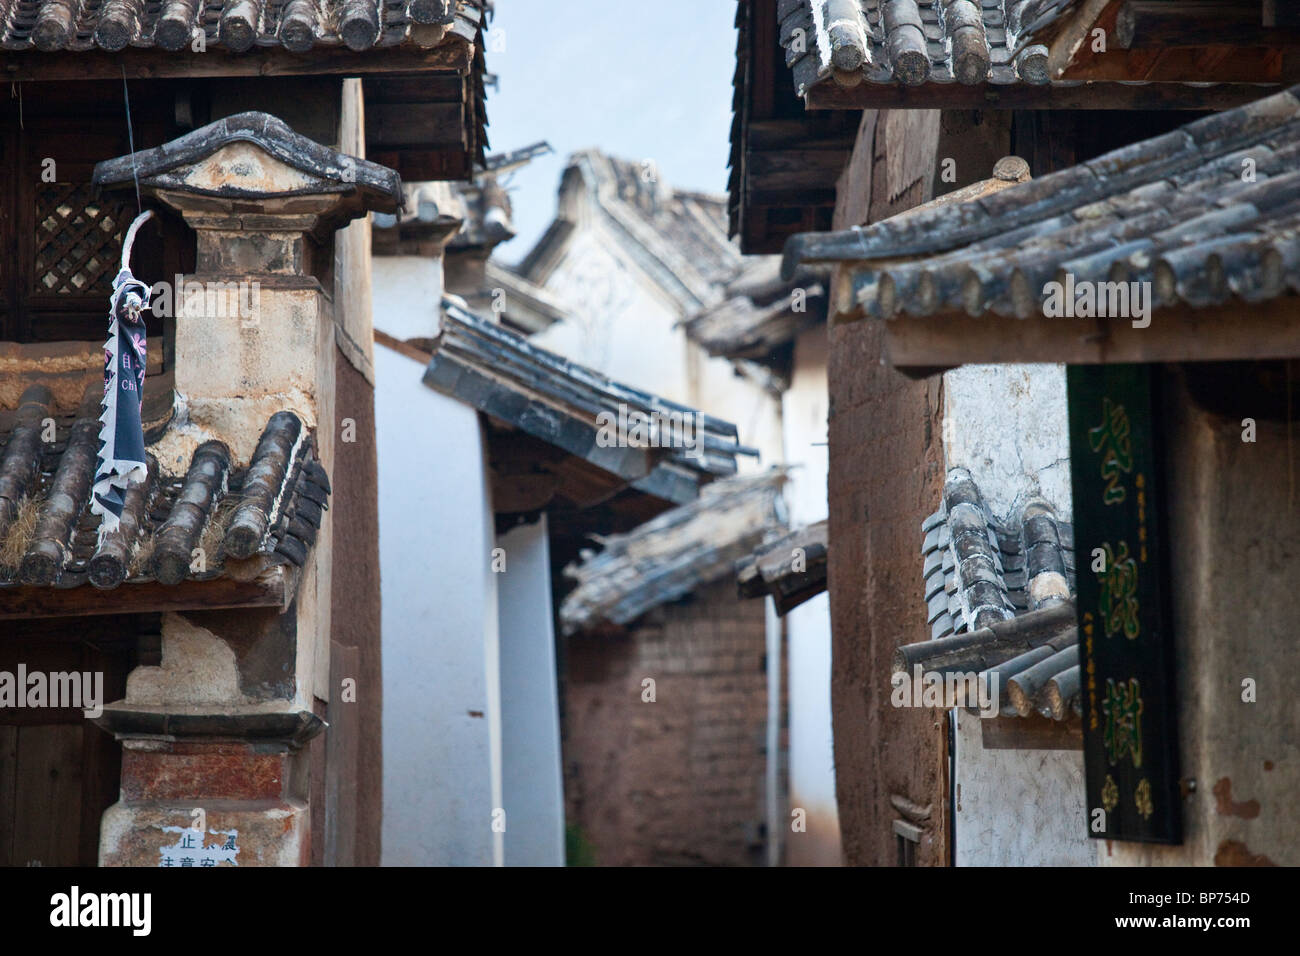 Shaxi villaggio, nella provincia dello Yunnan in Cina Foto Stock